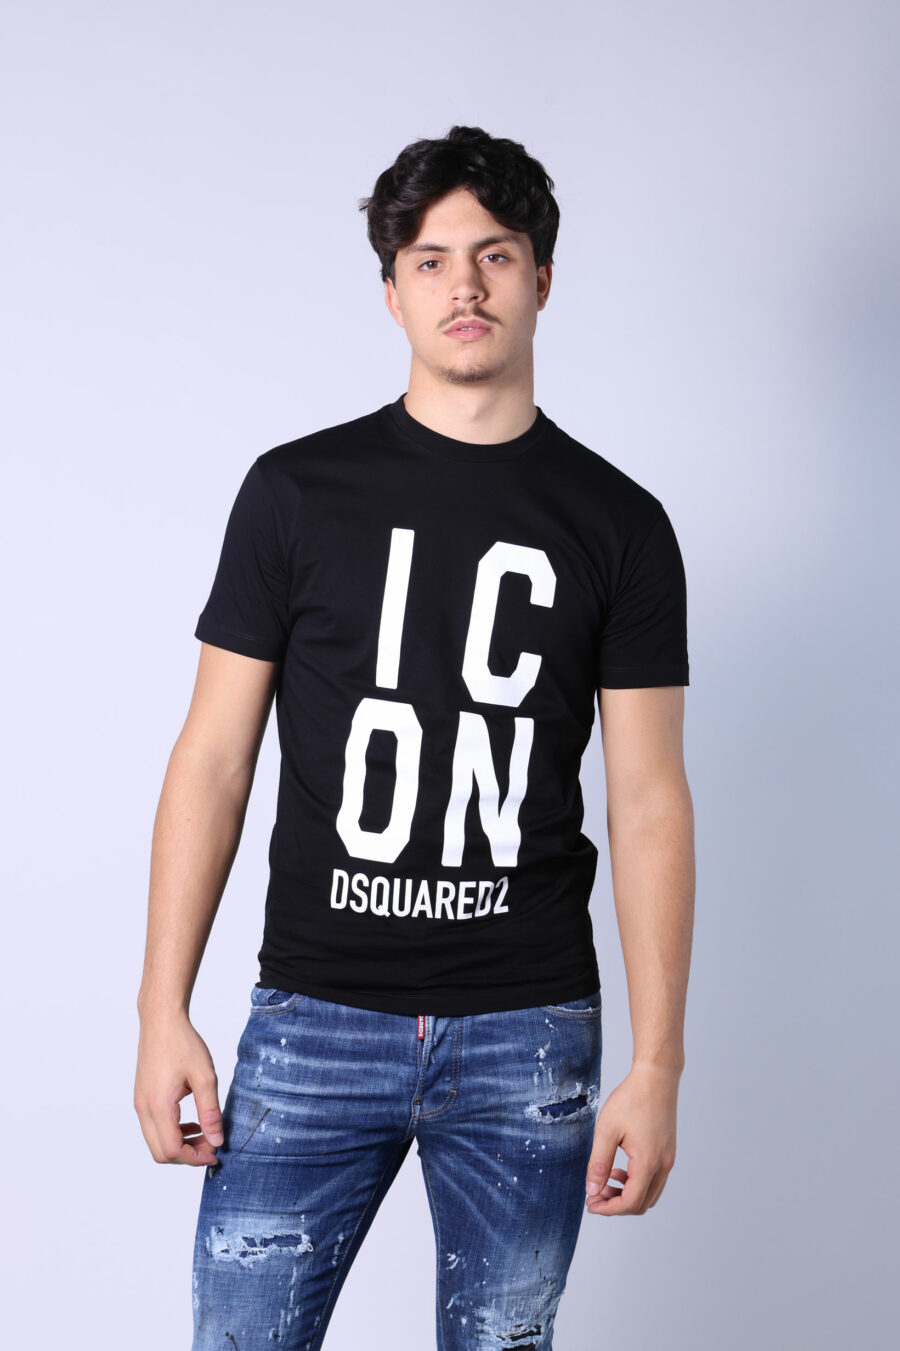 T-shirt preta com maxilogo "ícone" quadrado - Untitled Catalog 05283